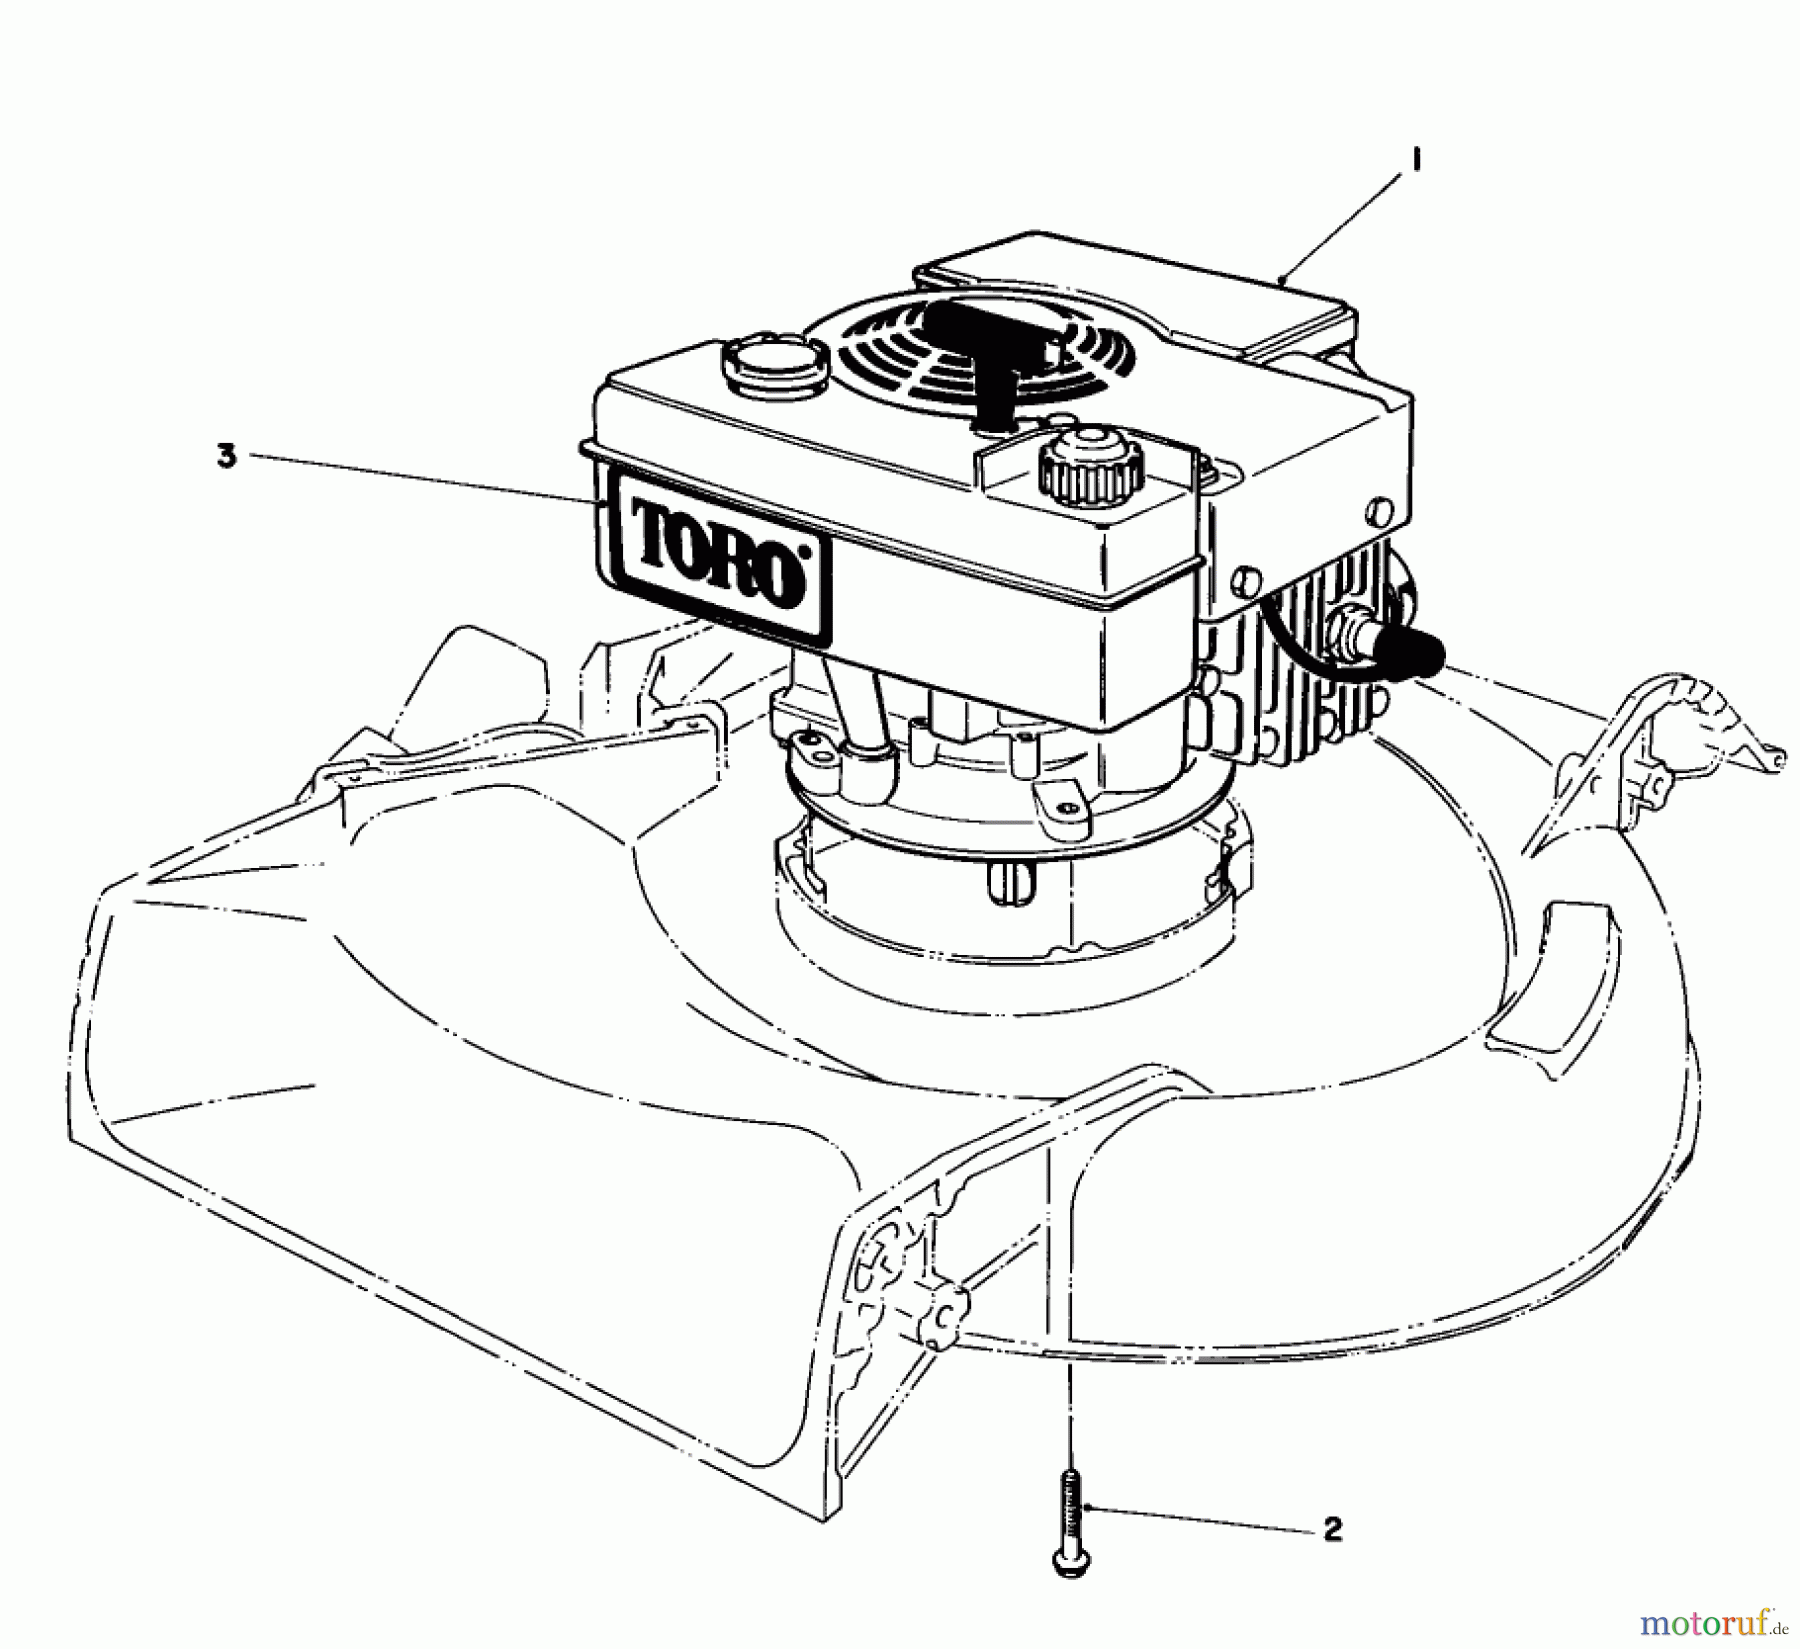  Toro Neu Mowers, Walk-Behind Seite 1 16340C - Toro Lawnmower, 1985 (5000001-5999999) ENGINE ASSEMBLY